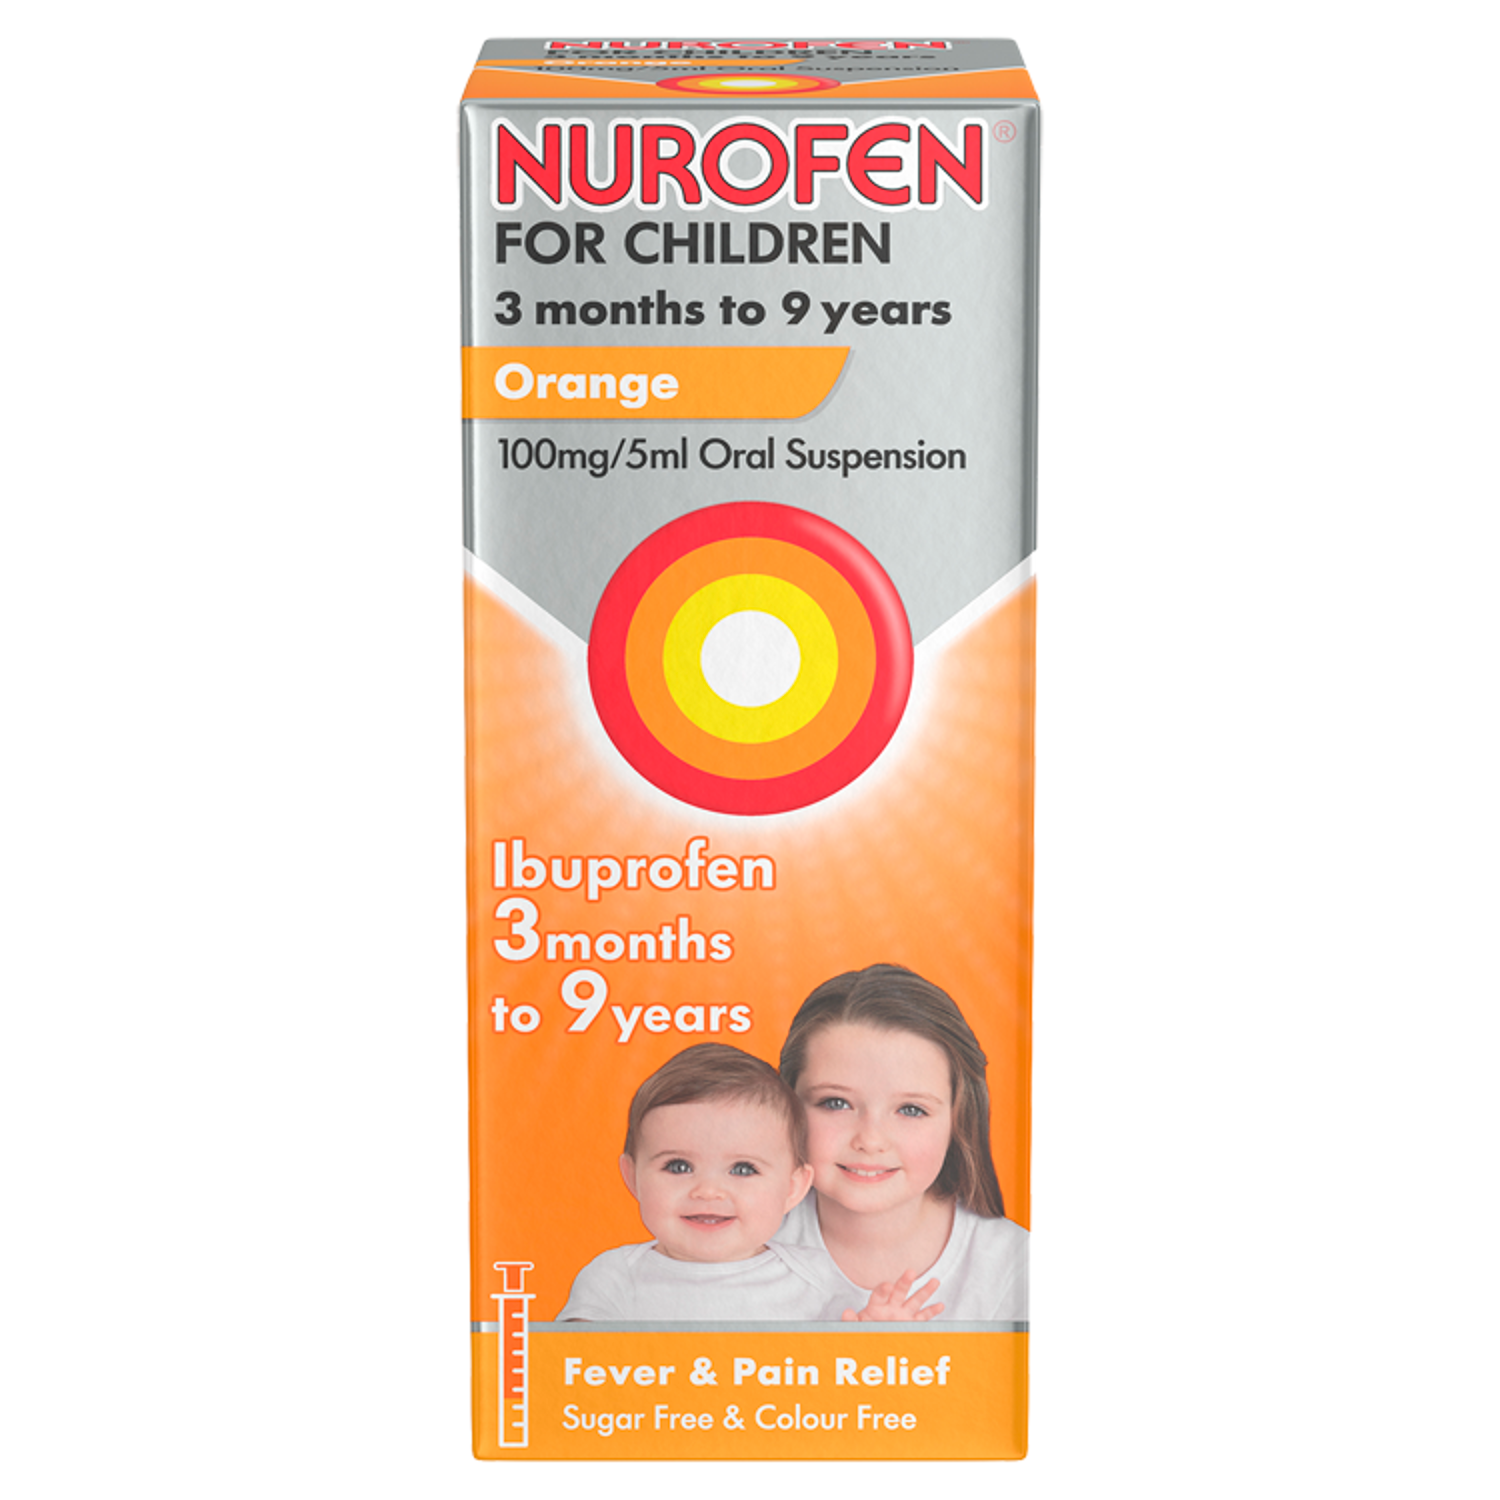 Nurofen for Children 3 Months to 9 Years Orange flavour oral suspension 100ml